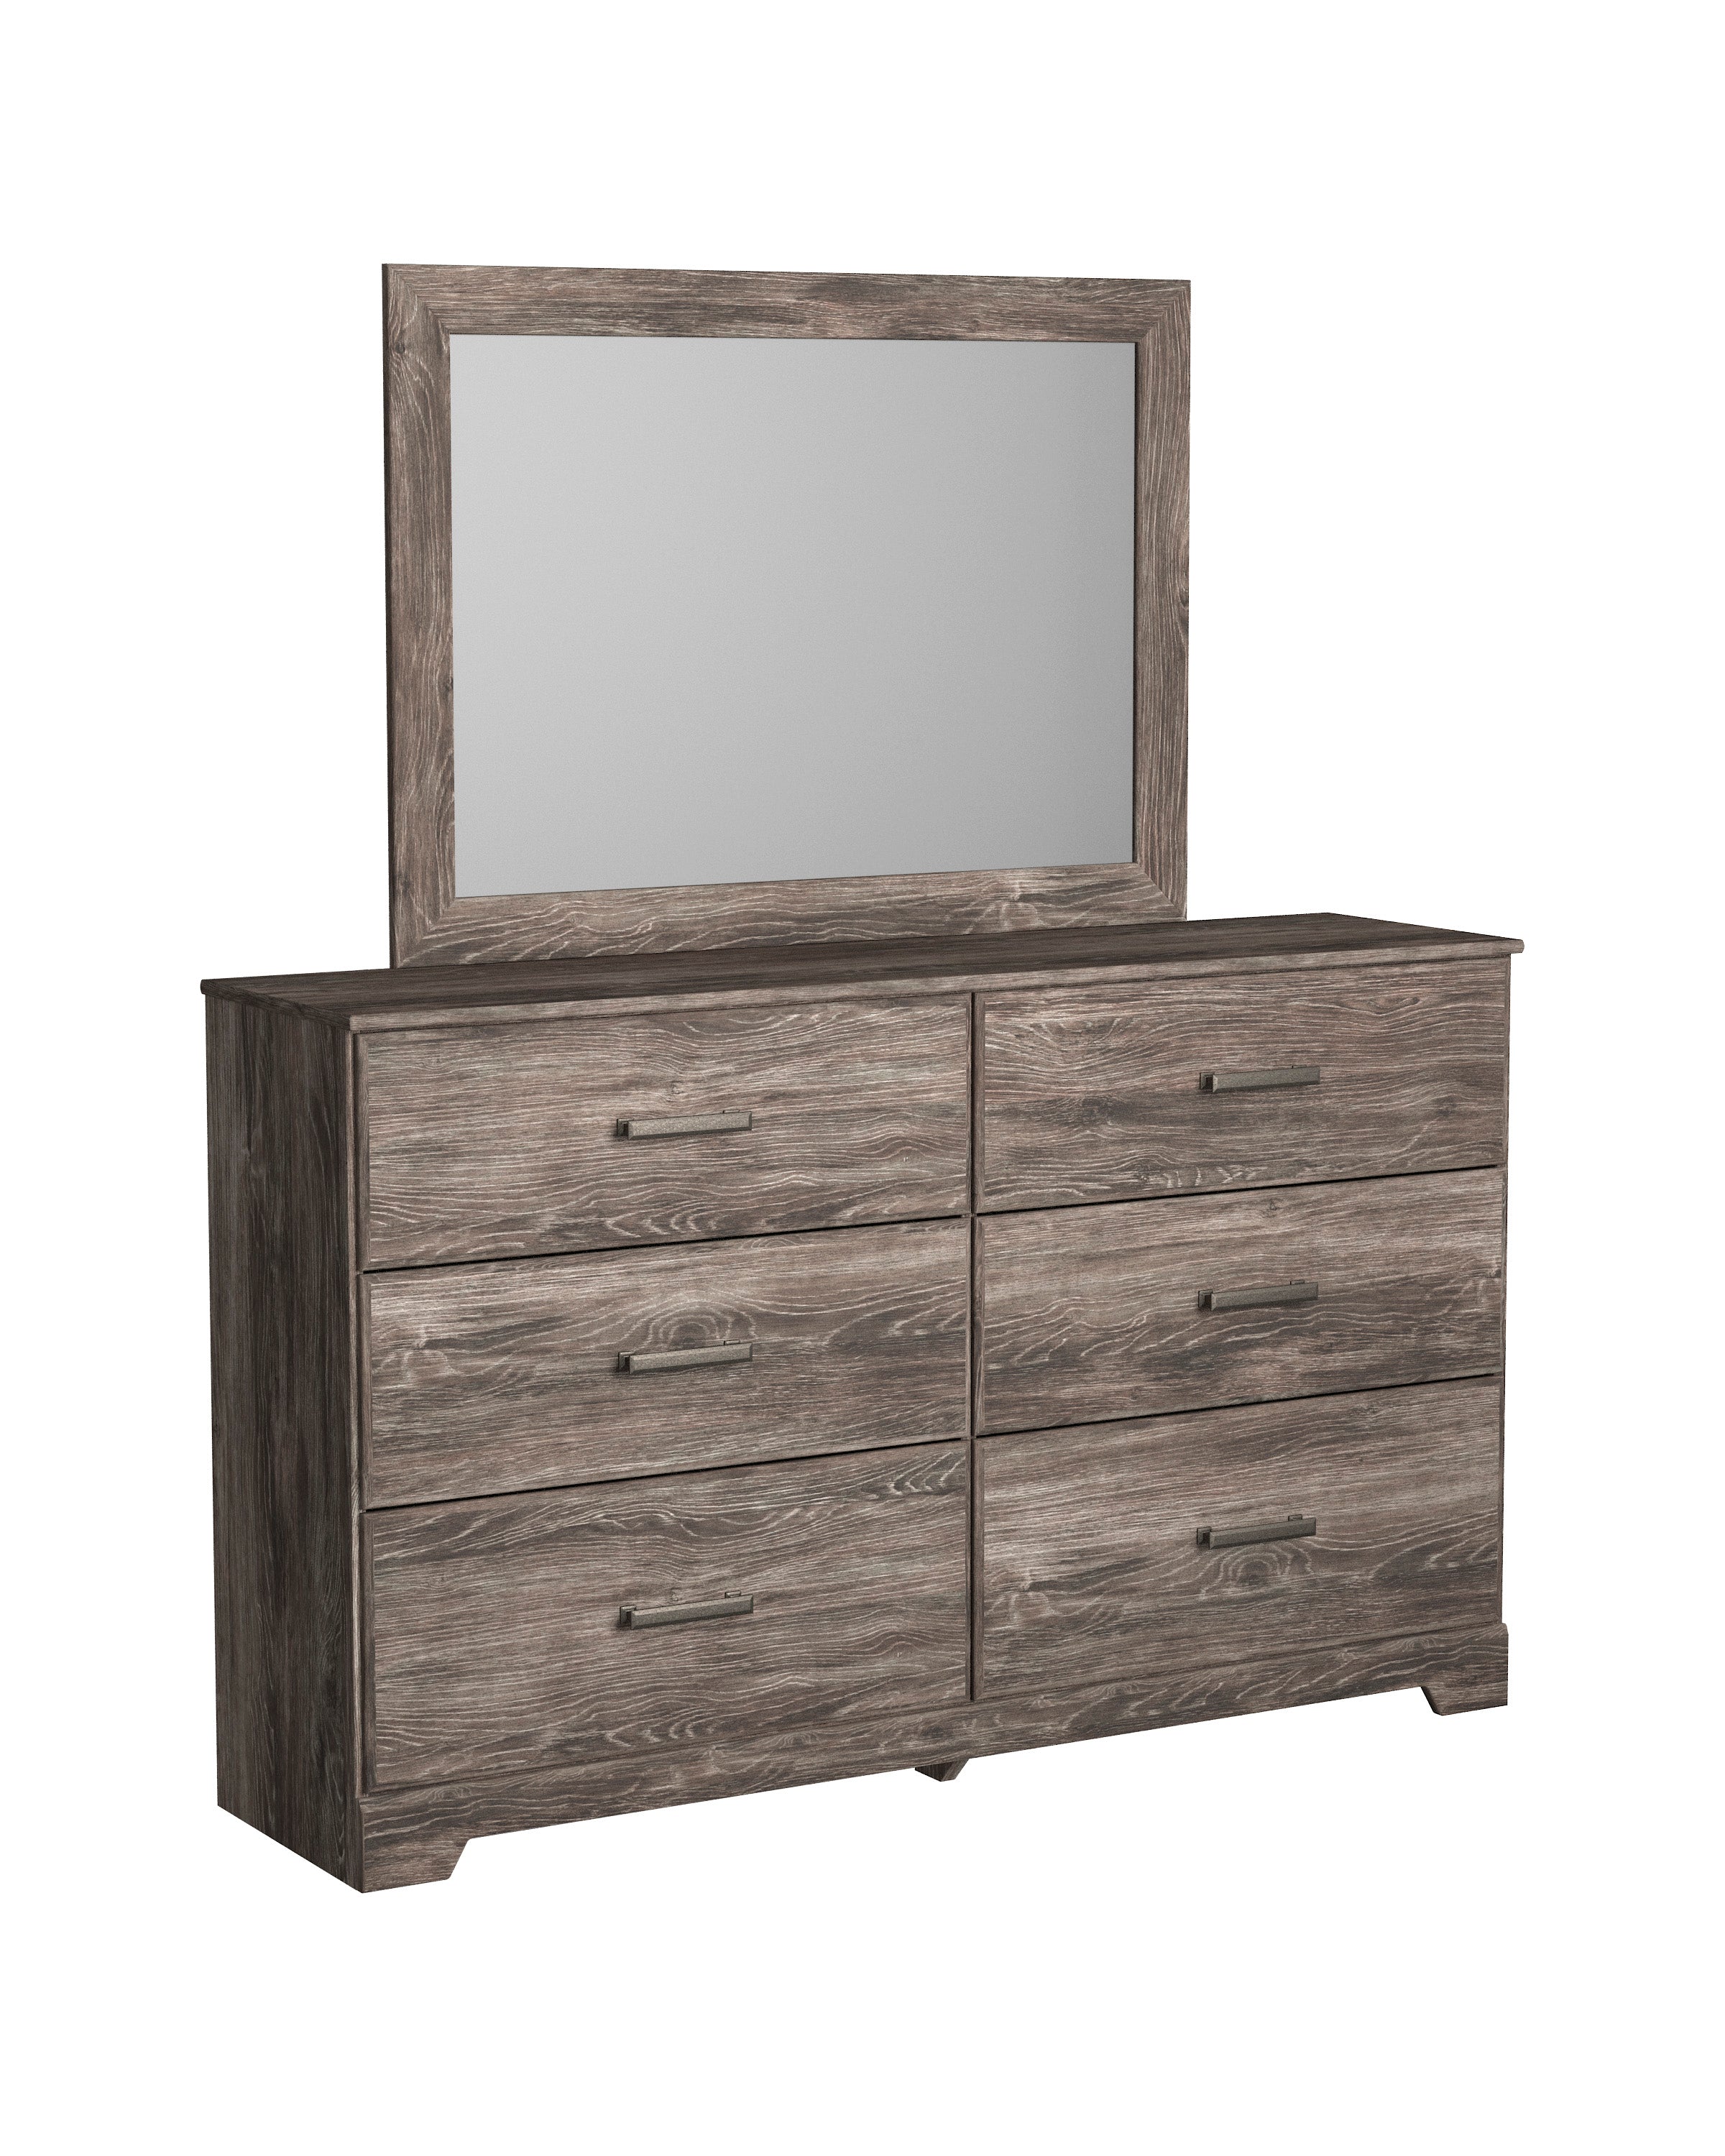 Ralinksi Dresser and Mirror